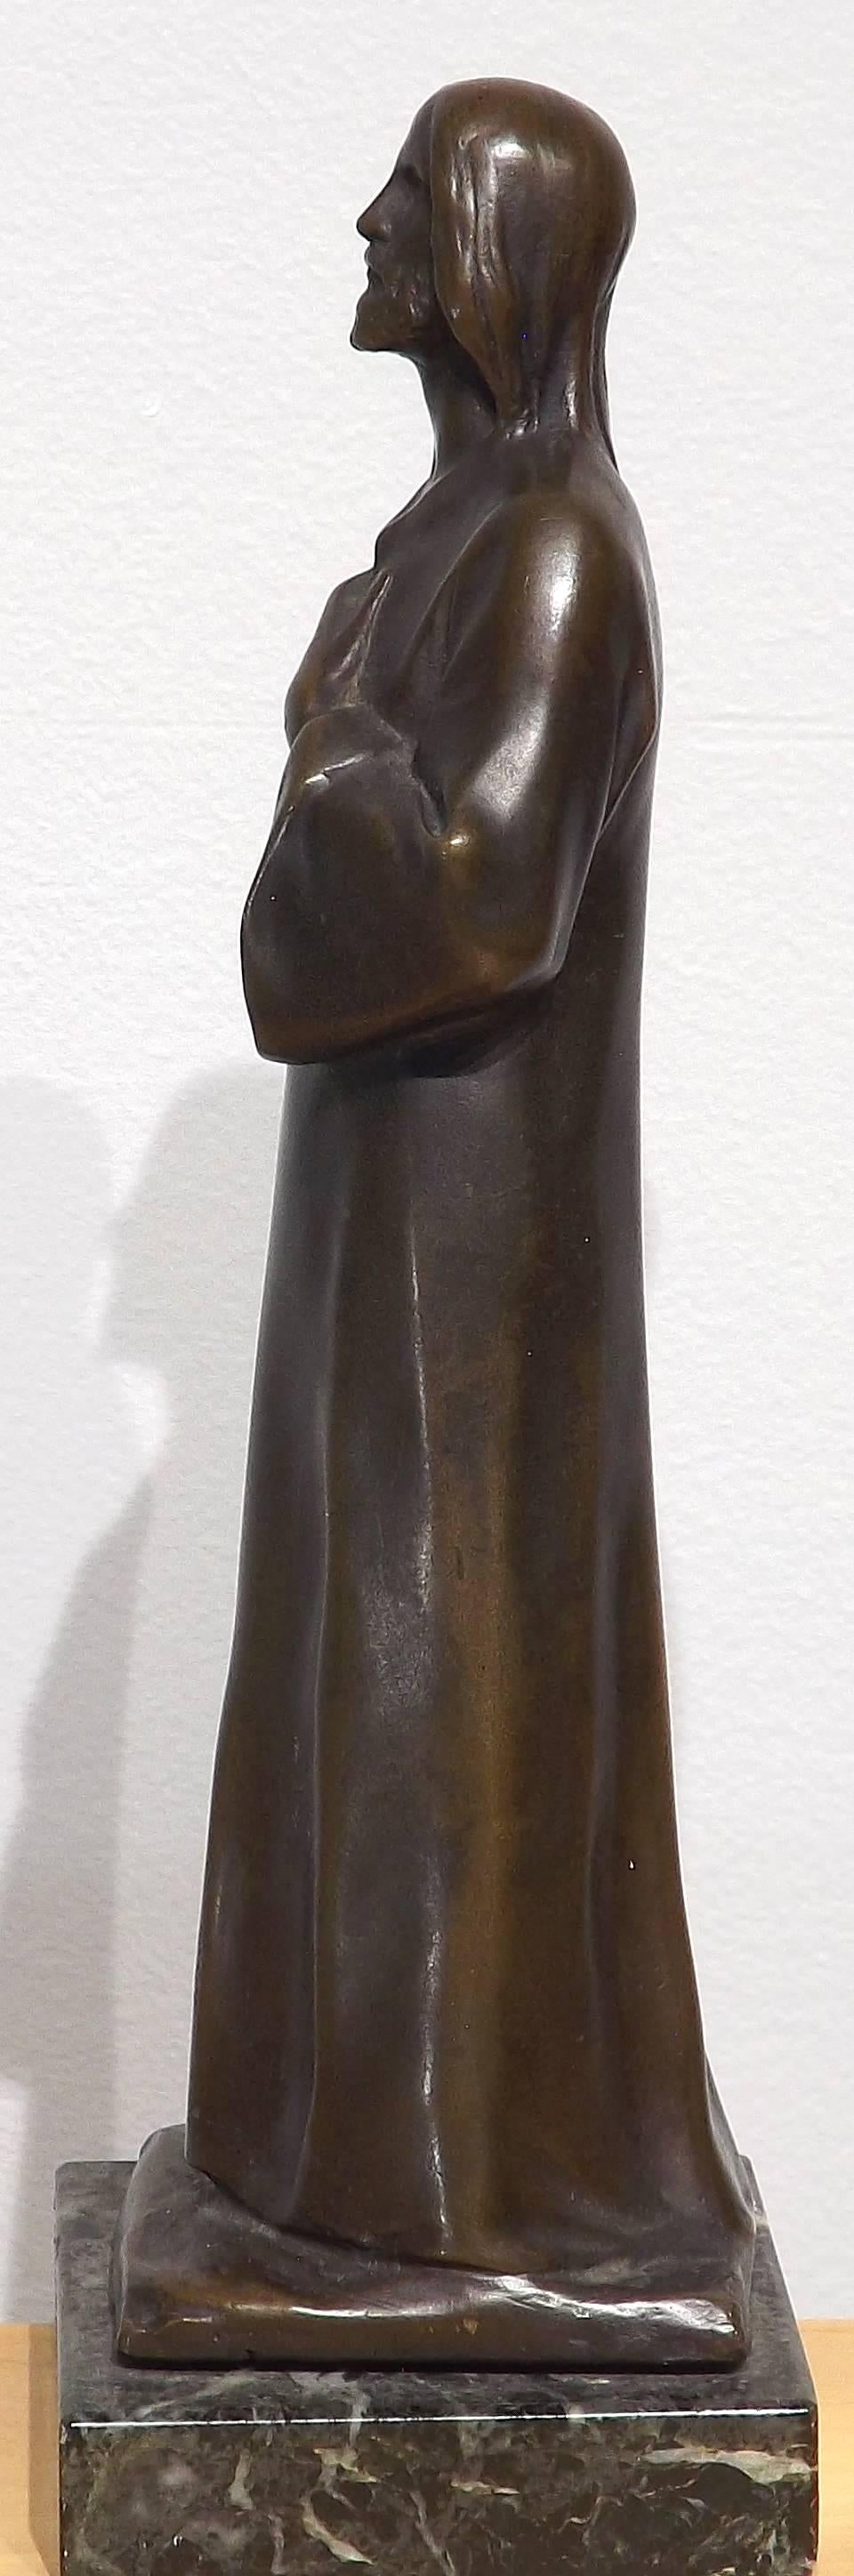 h muller bronze sculpture